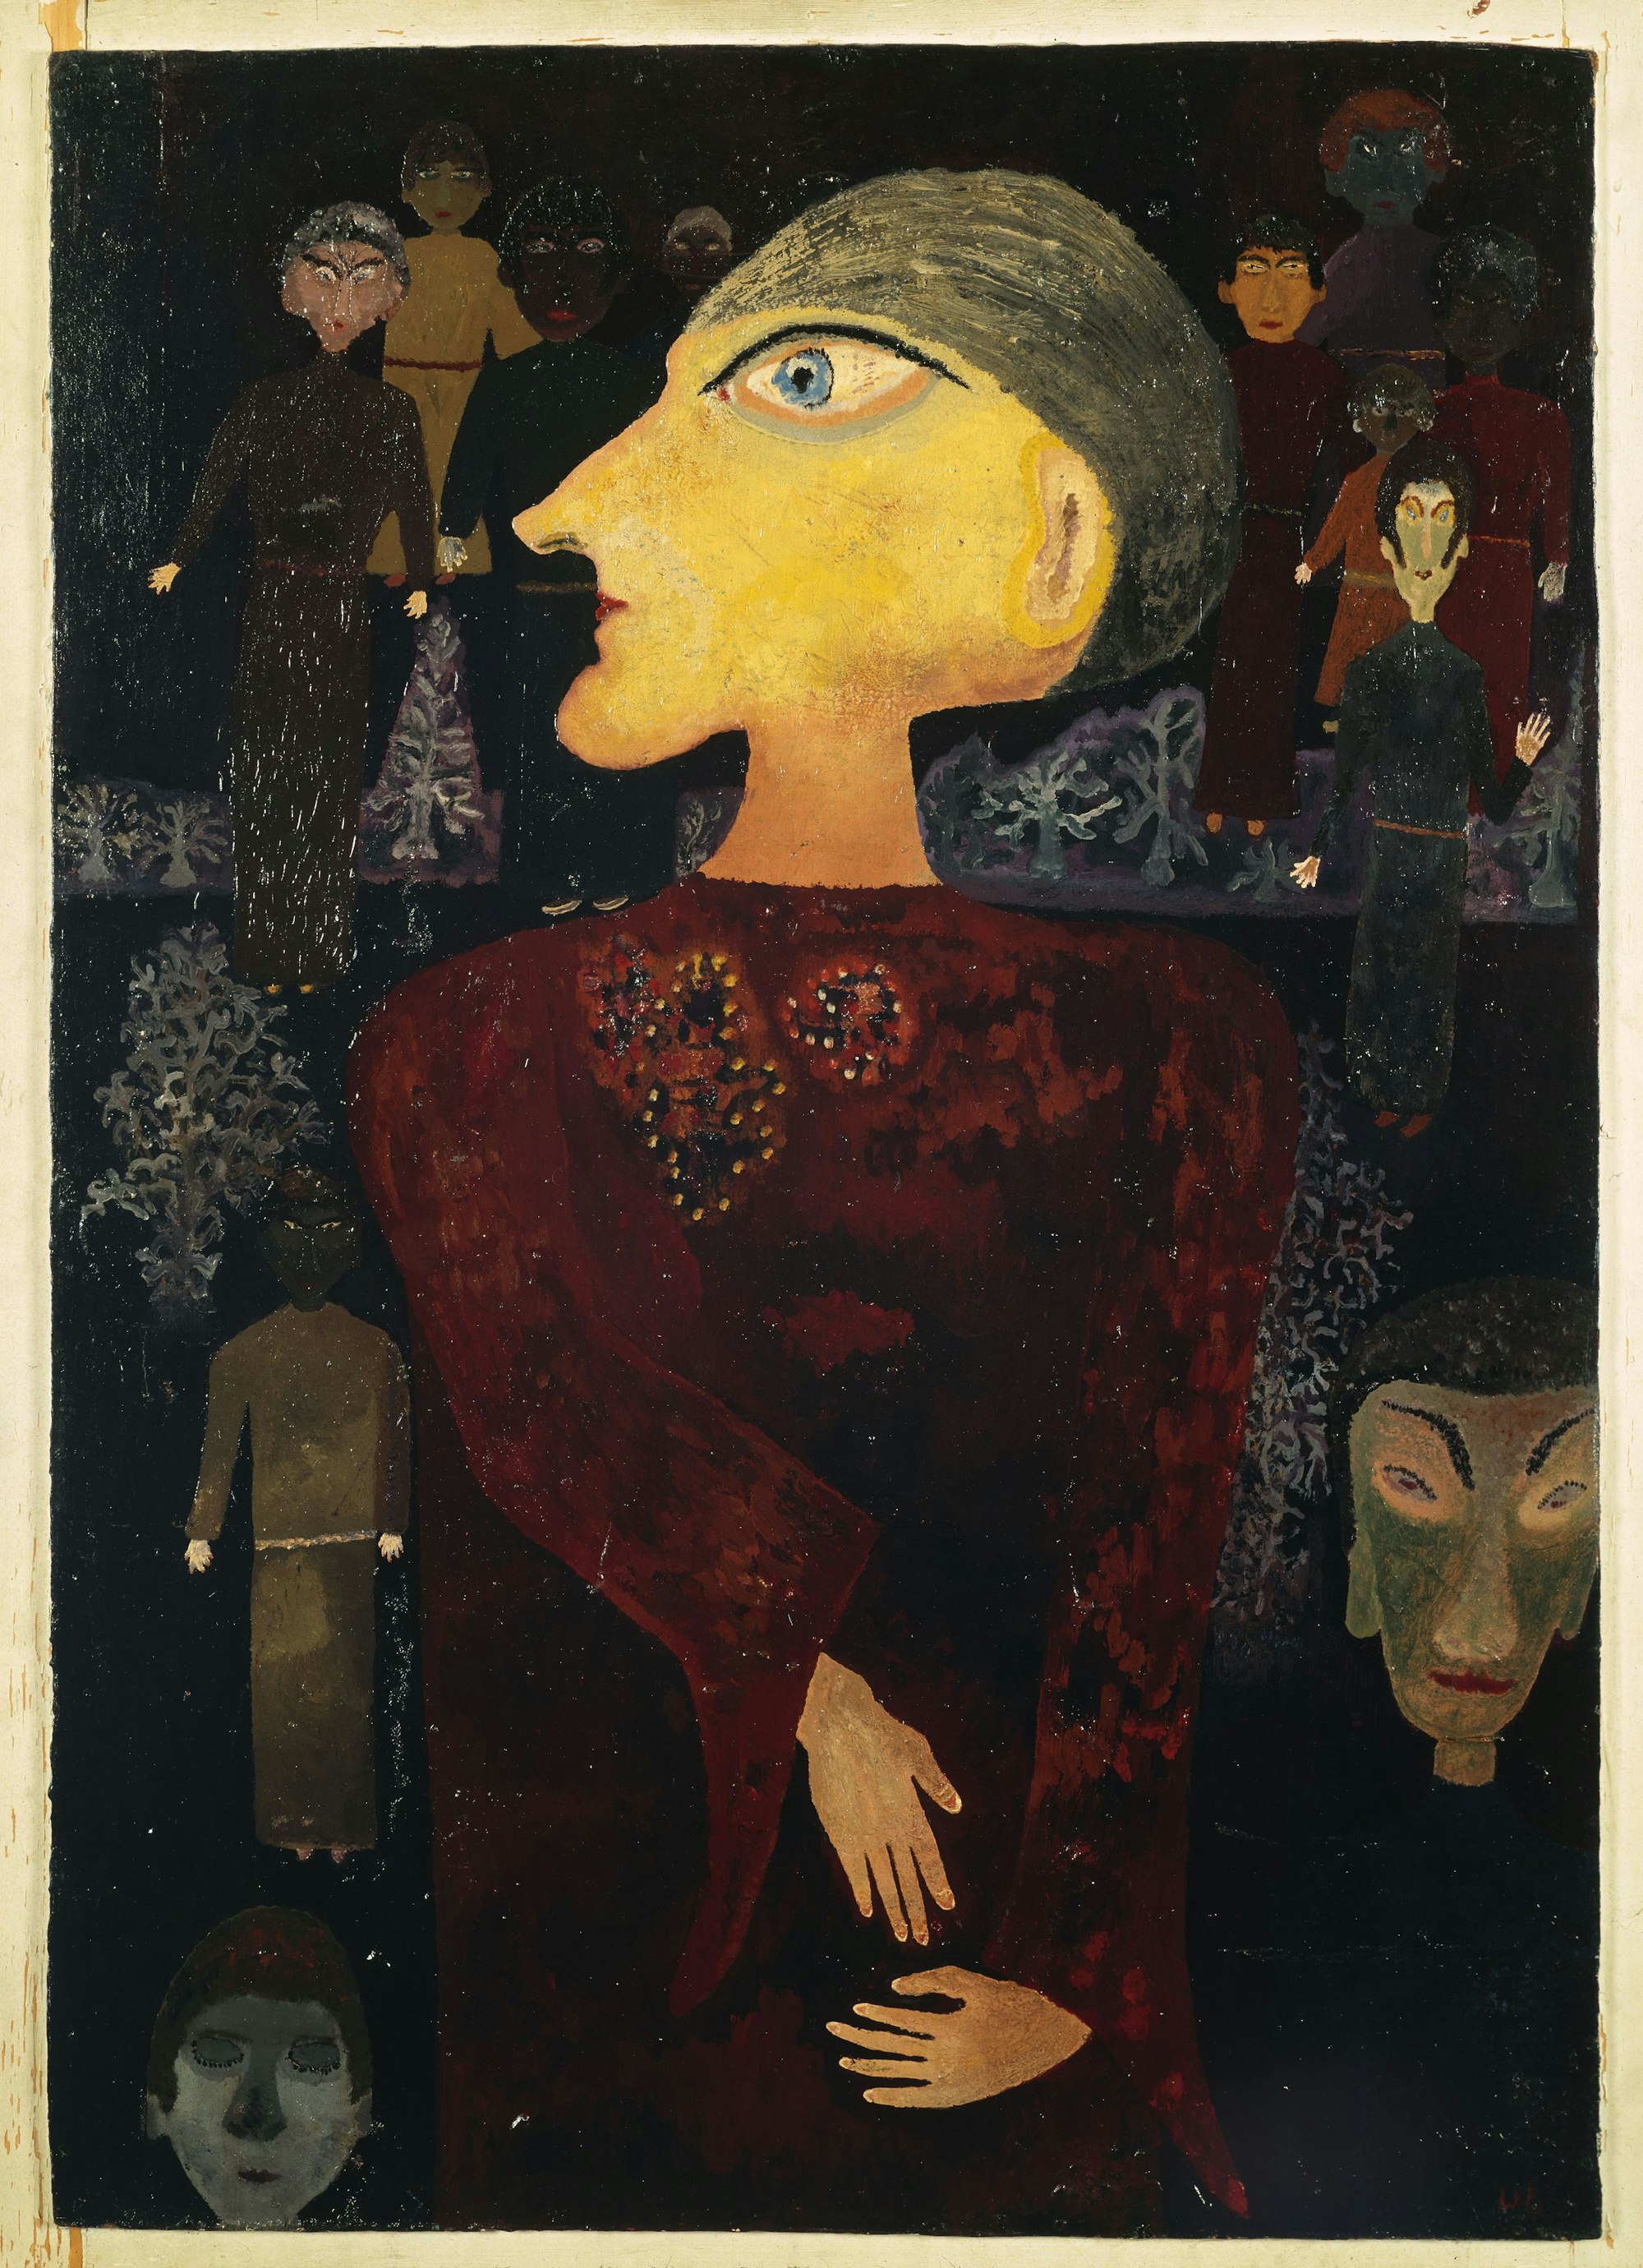 Auf dem surrealistischen Gemälde von Ursula Schultze-Bluhm ist eine Frau im Profil mit übergroßem Auge zu sehen.